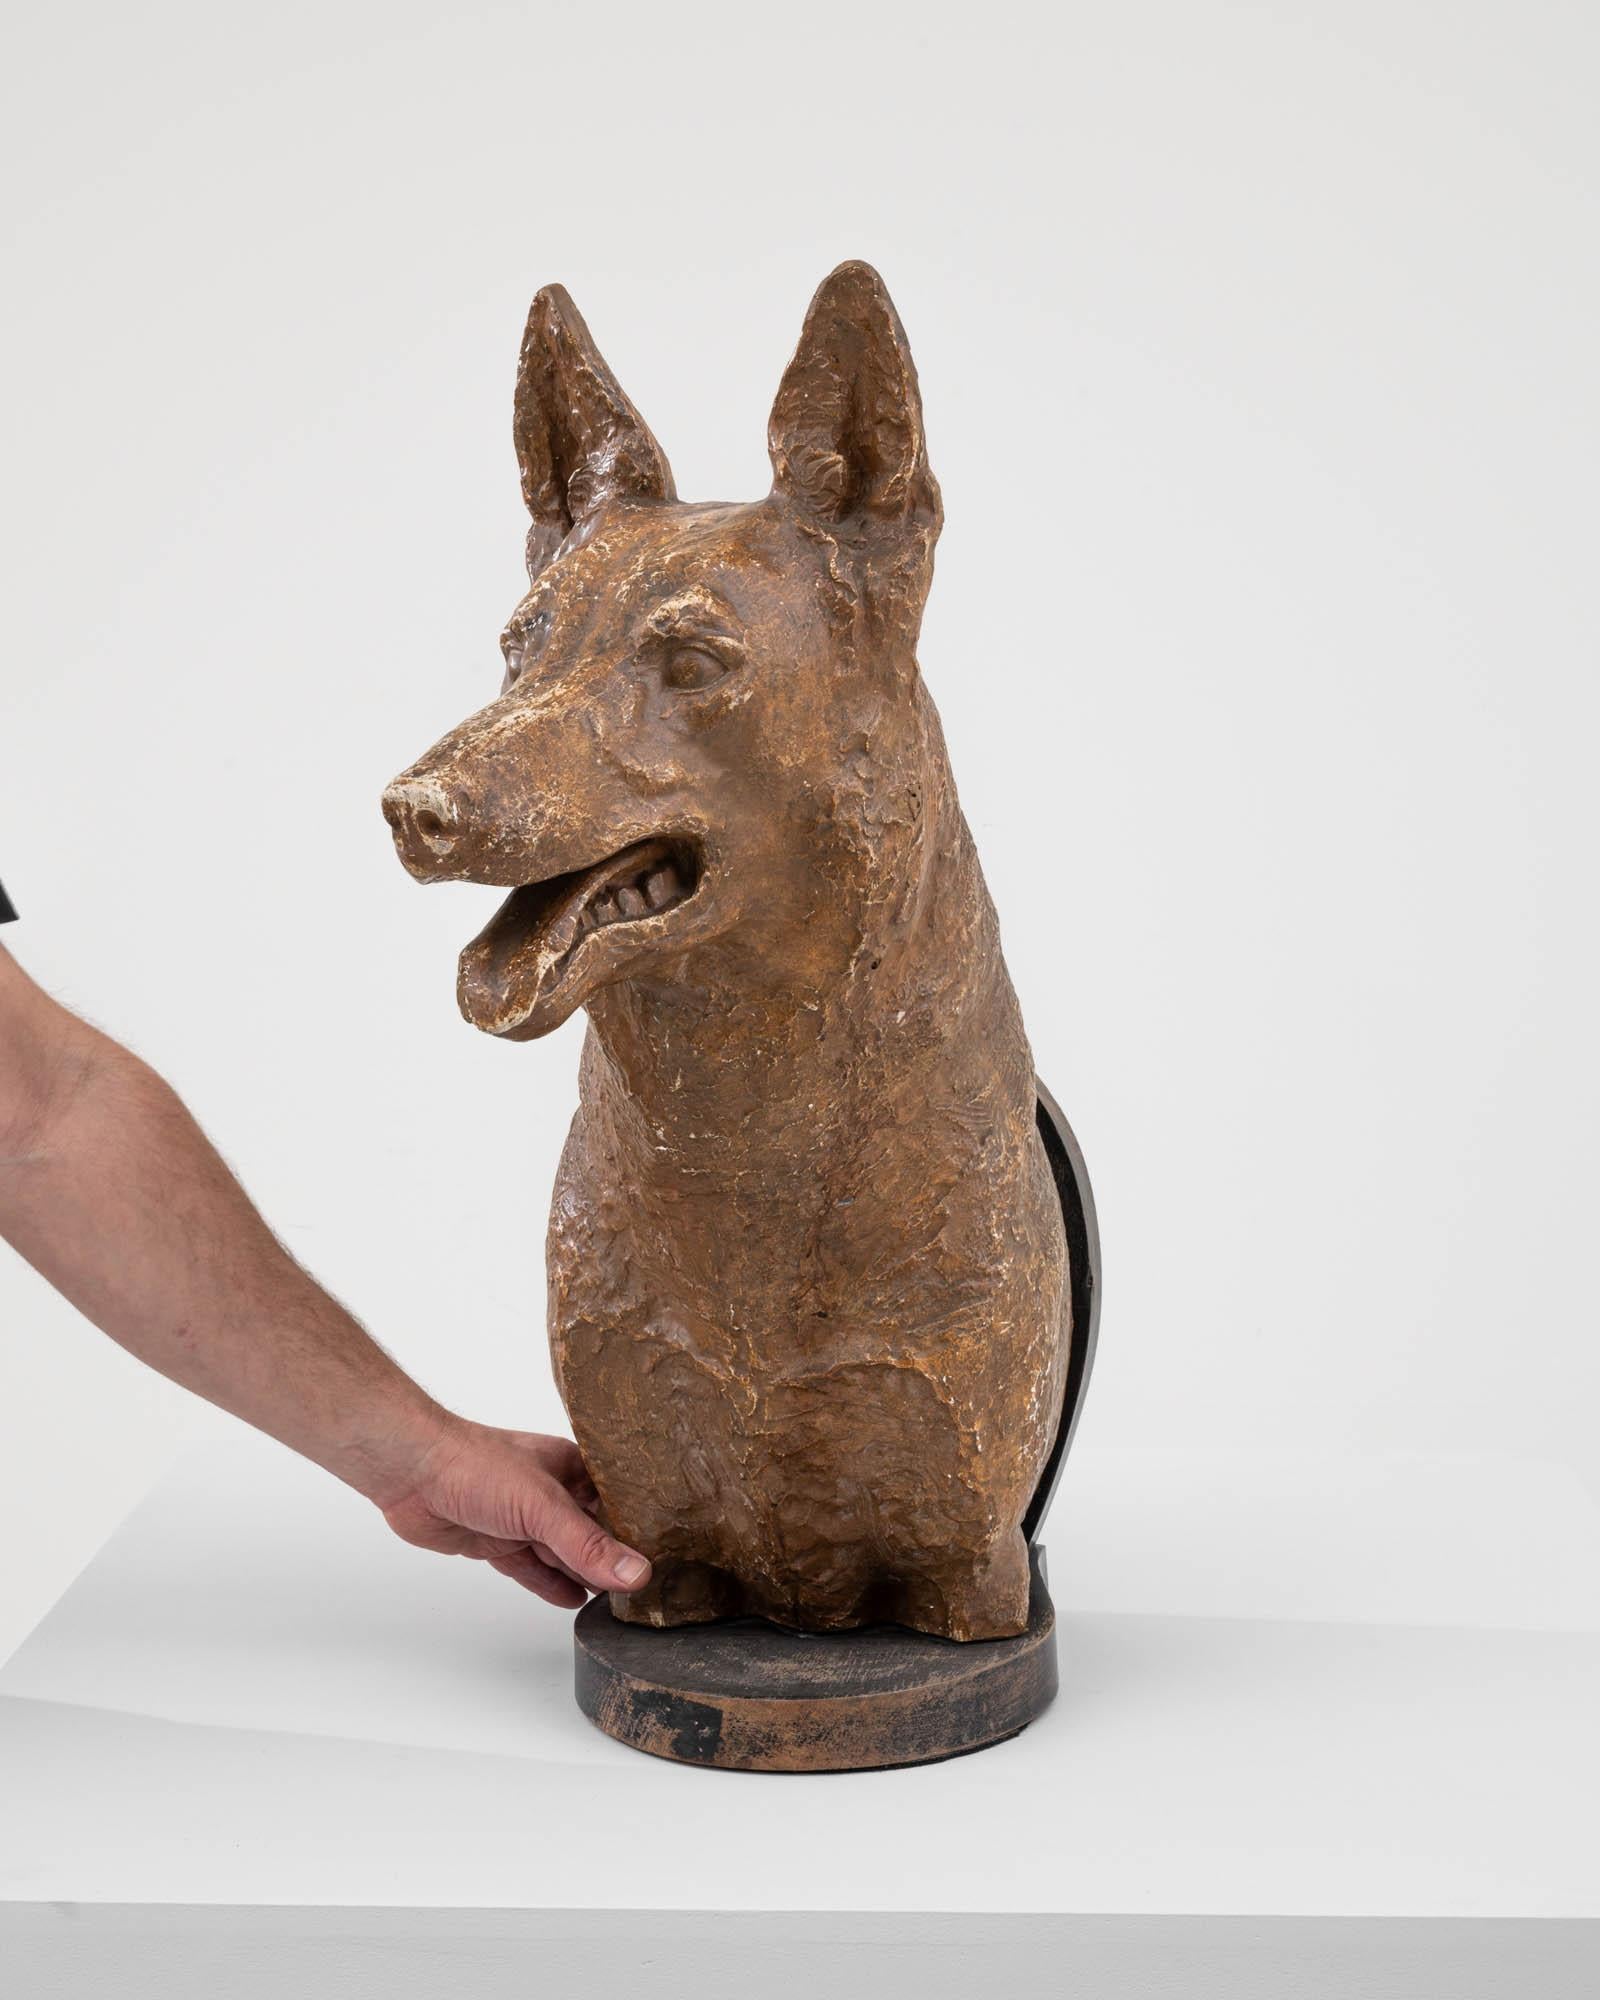 Cette sculpture de chien en plâtre du début du XXe siècle dégage une certaine noblesse et un certain charme. Réalisée avec le souci du détail, cette sculpture met en scène un fidèle canidé à l'expression alerte et posée. Le plâtre permet d'obtenir